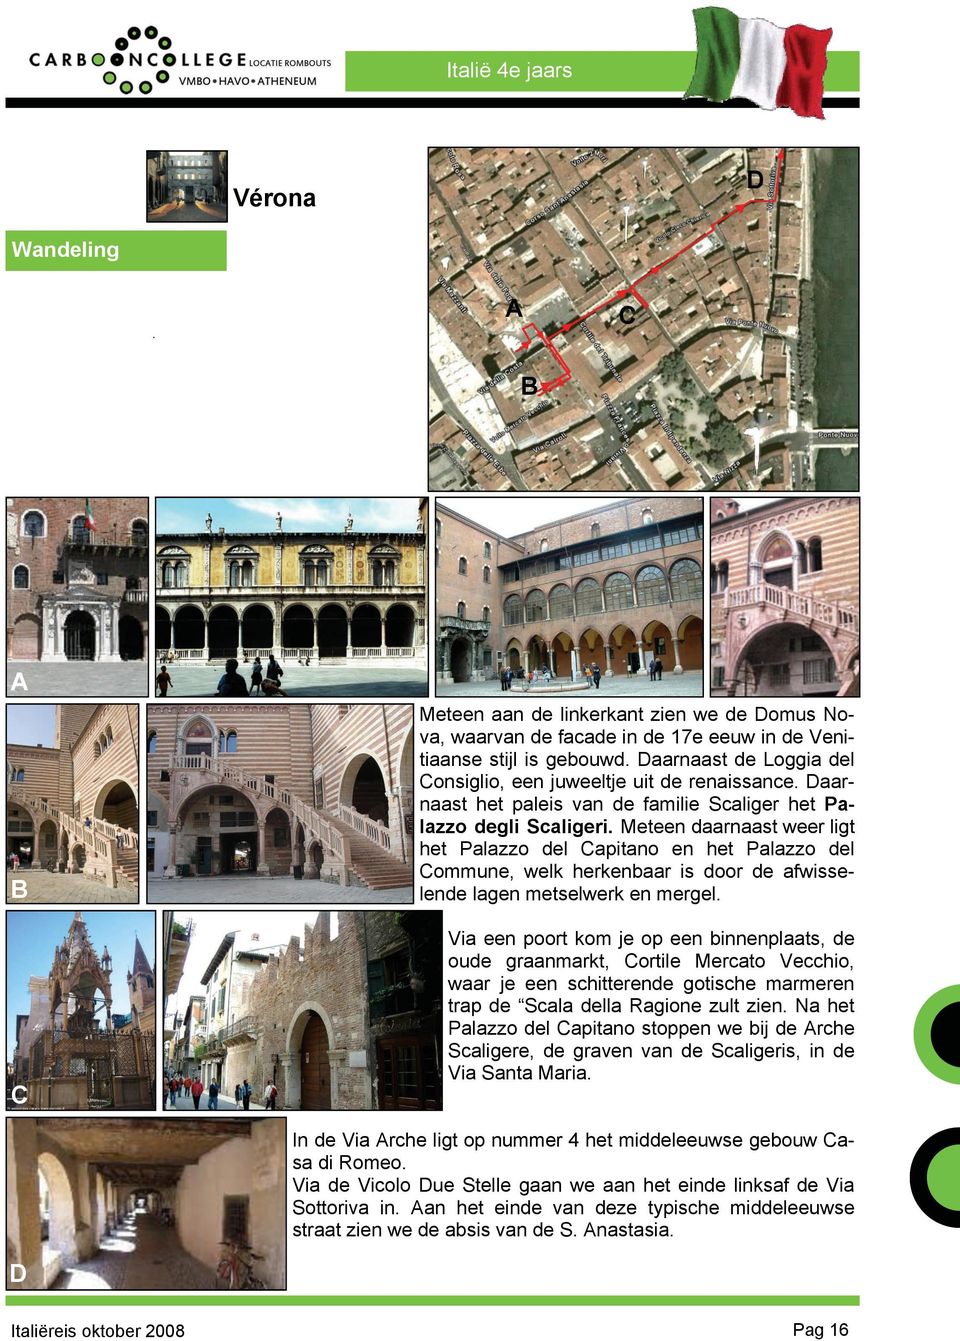 Meteen daarnaast weer ligt het Palazzo del apitano en het Palazzo del ommune, welk herkenbaar is door de afwisselende lagen metselwerk en mergel.